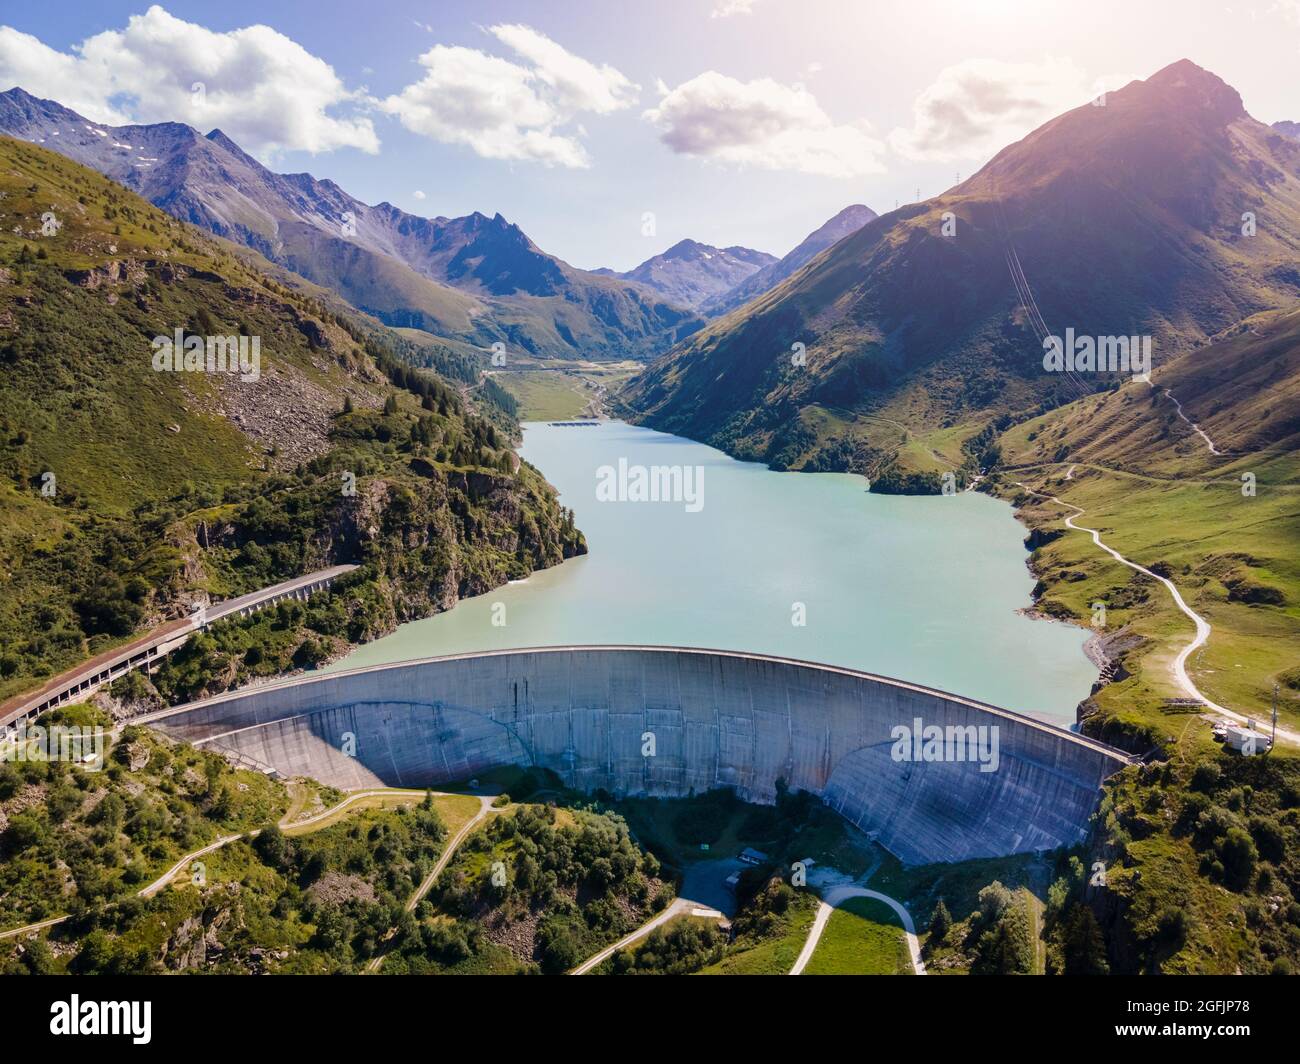 Staudamm und Stausee in den Schweizer Alpen zur Erzeugung von Wasserkraft. Luftaufnahme des Bogendamms zwischen den Bergen. Wasserkraft grüne Energie für Sustain Stockfoto